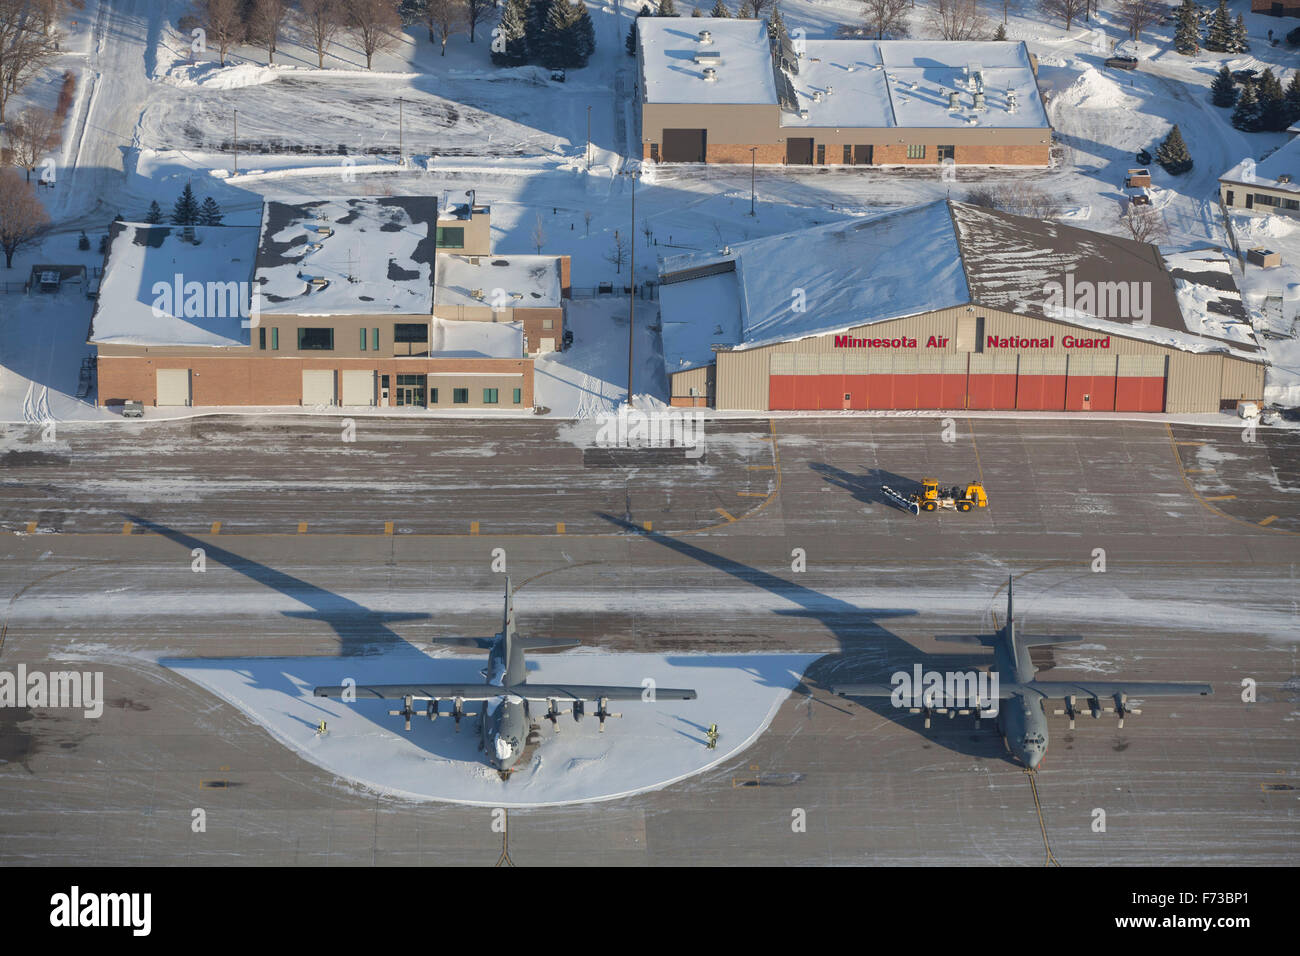 Dies ist eine Luftaufnahme von Minneapolis-St. Paul international Airport im Dezember, Kleiderbügel, Park Flugzeuge, Umgebung, überall liegt Schnee. Stockfoto